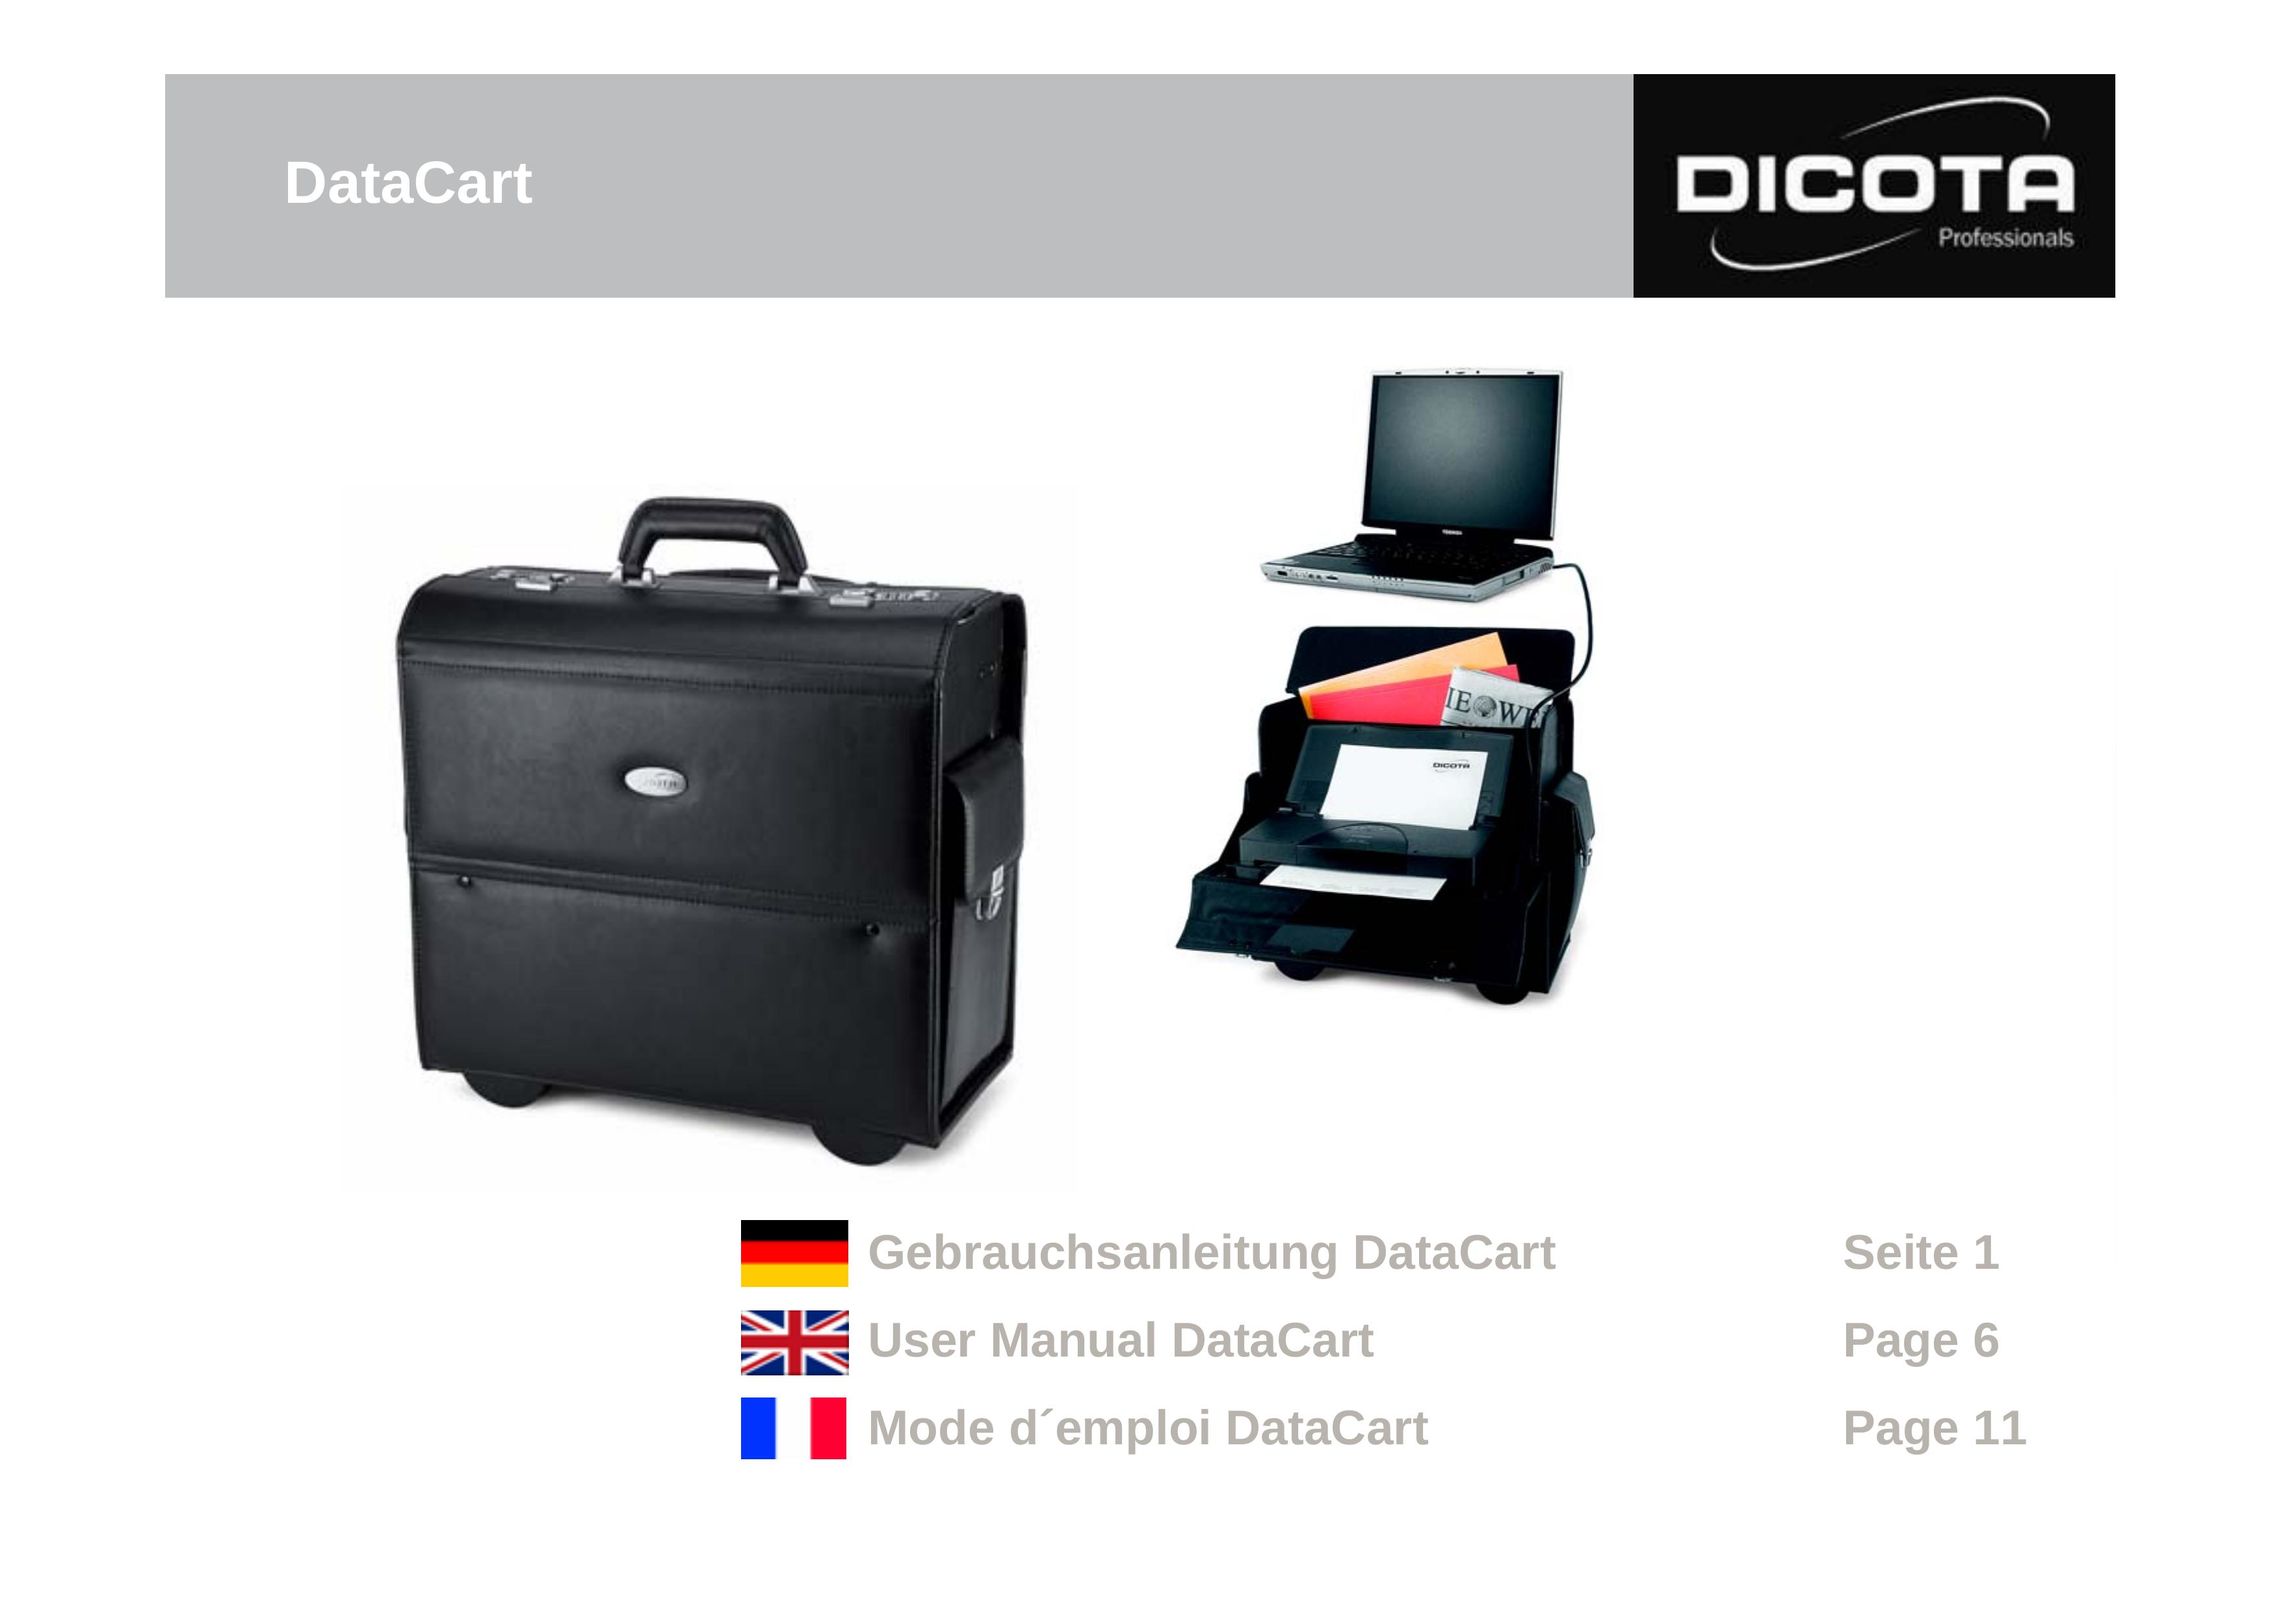 Dicota DataCart Printer User Manual